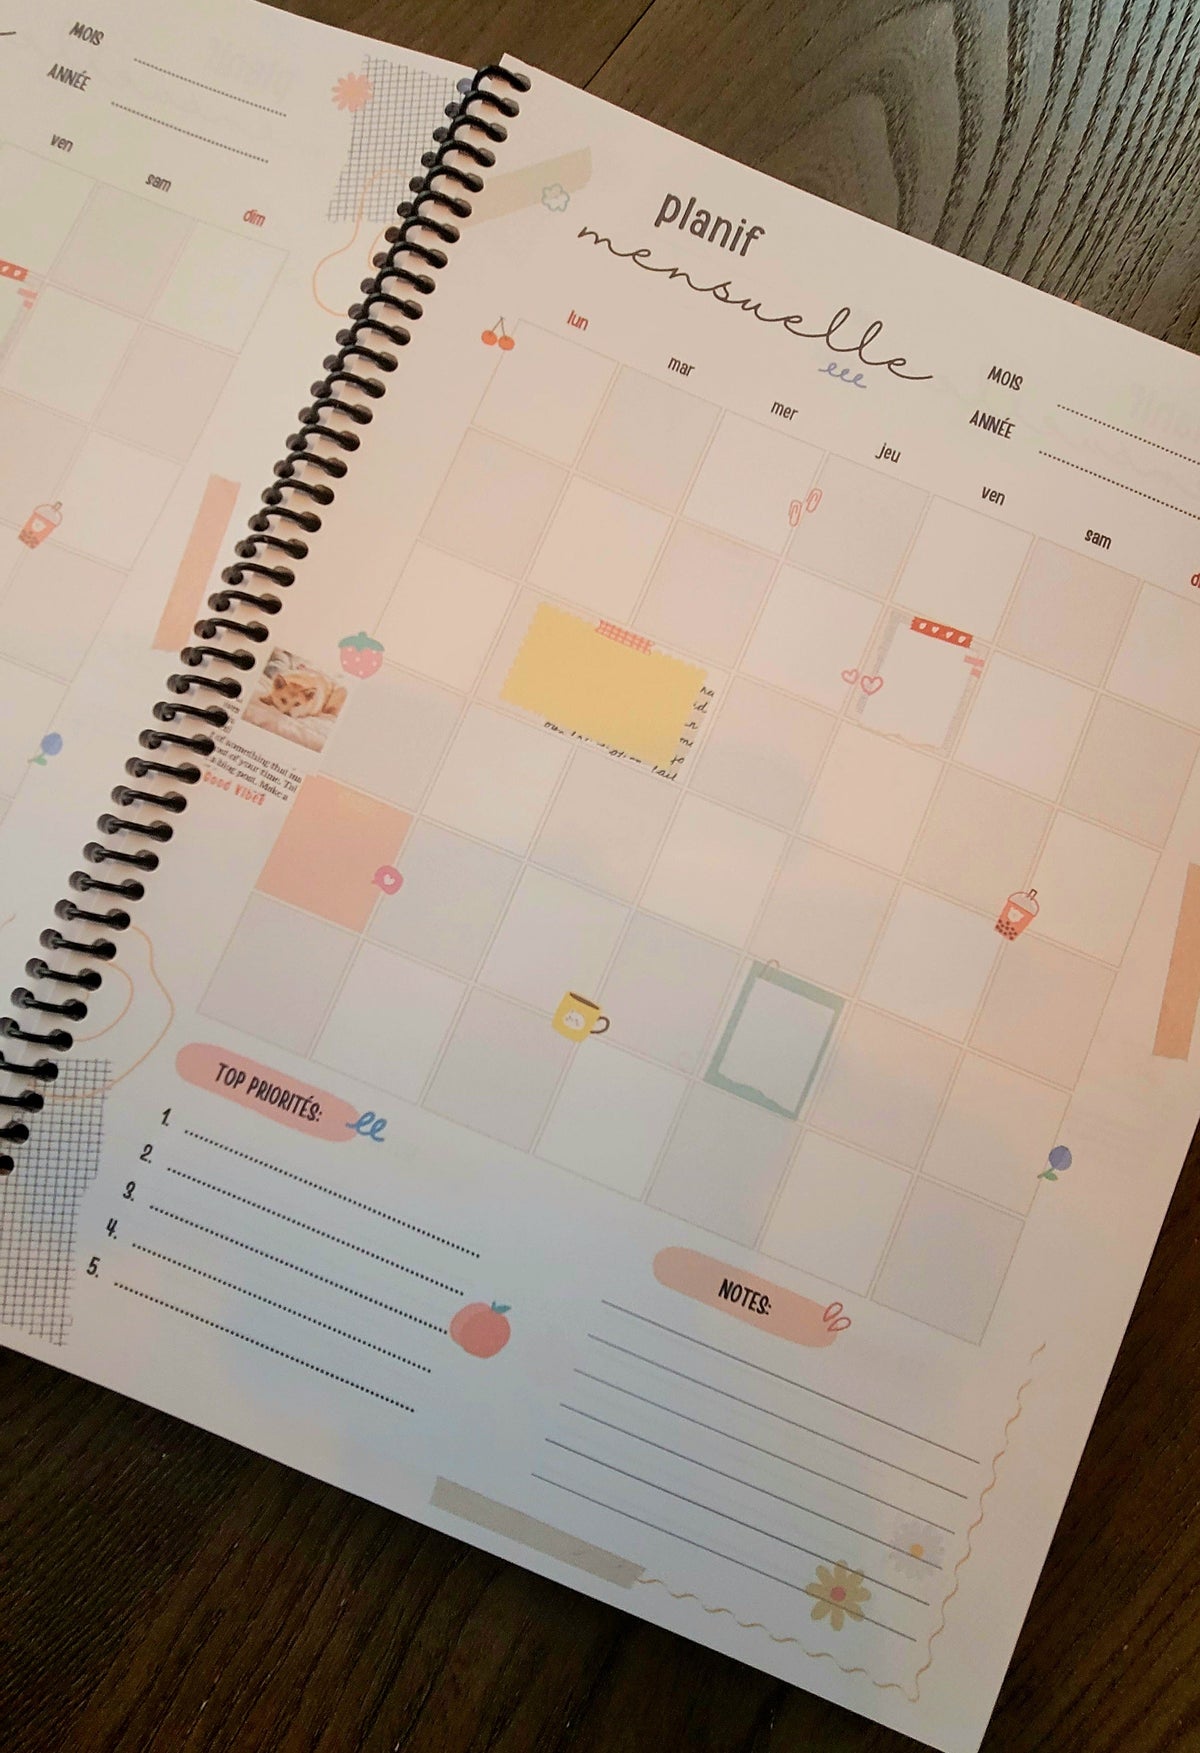 Ma planif quotidienne non daté + 12 calendriers mensuels + 12 mois de budgets